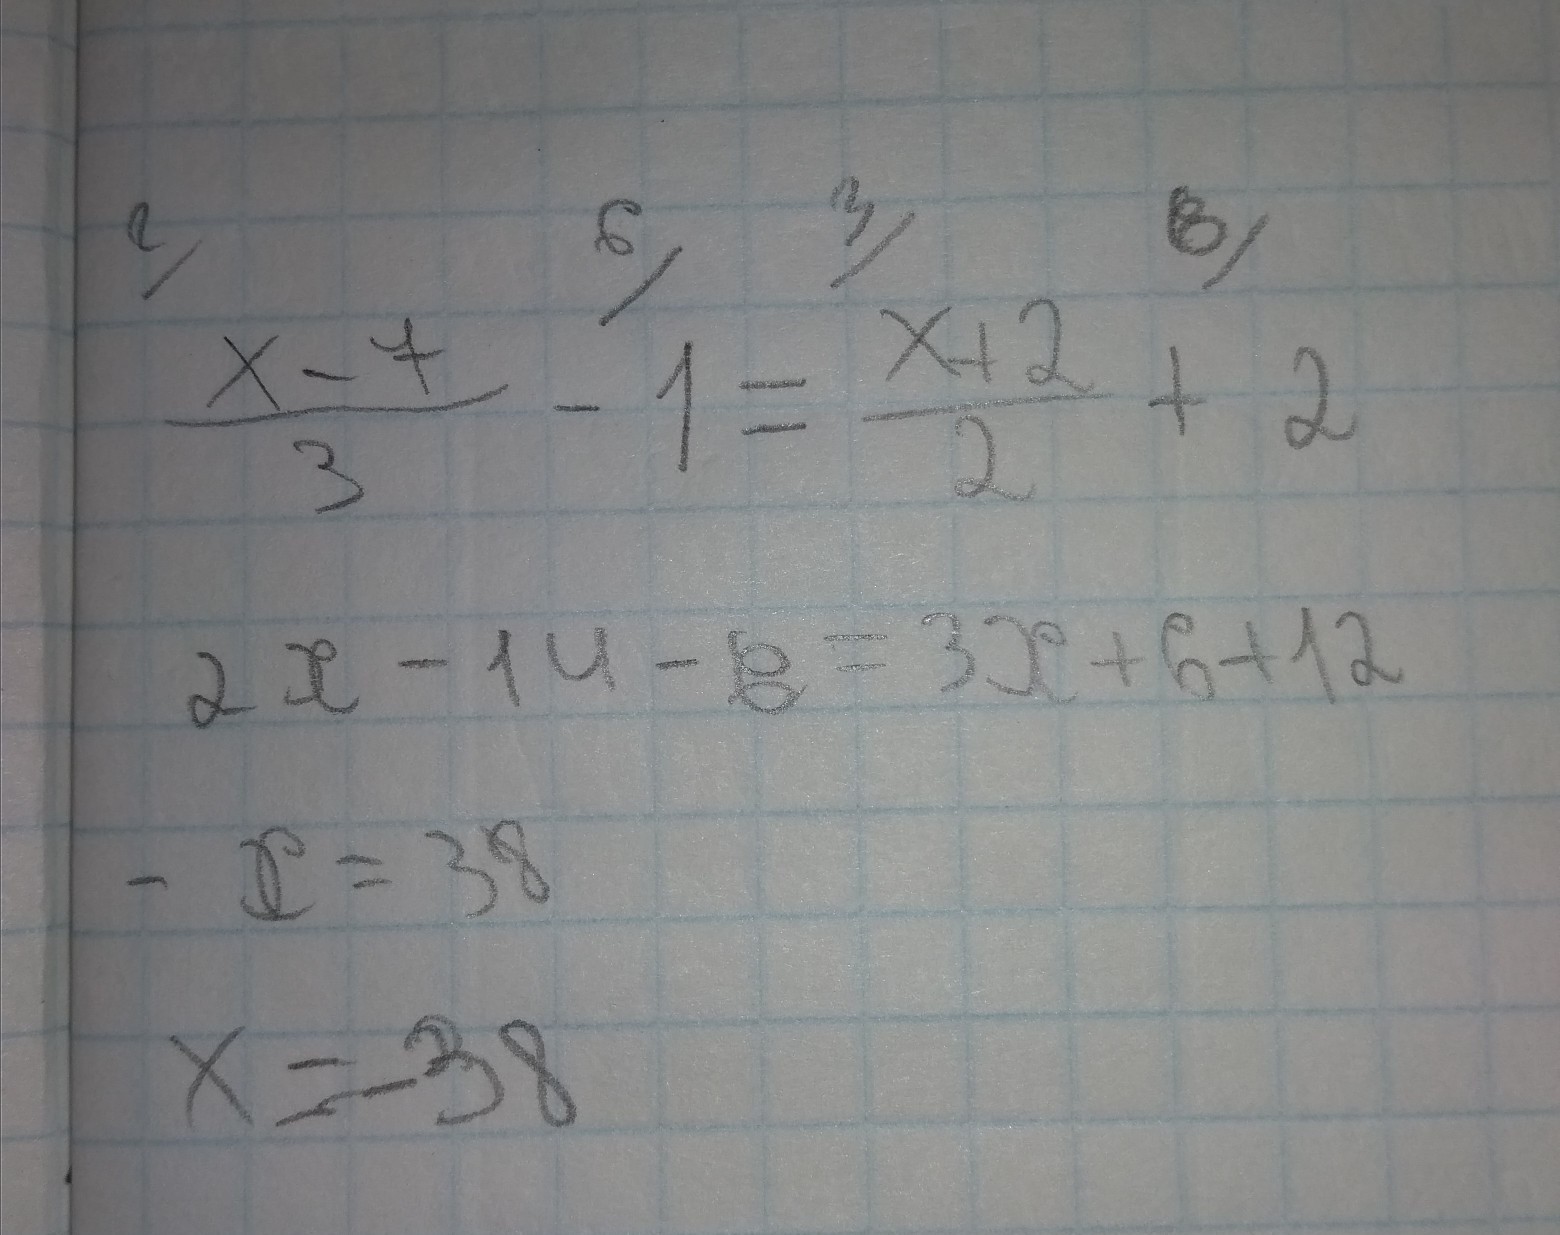 3х 7 3х х2 5 х2. (Х-2)*(Х+2 сжать. Выражение (х-1)4+(х-1)2-3. Увеличение x2. 3. Найдите значение выражения -х(х-7)+(х+5)(х-5) при х= три седьмых.